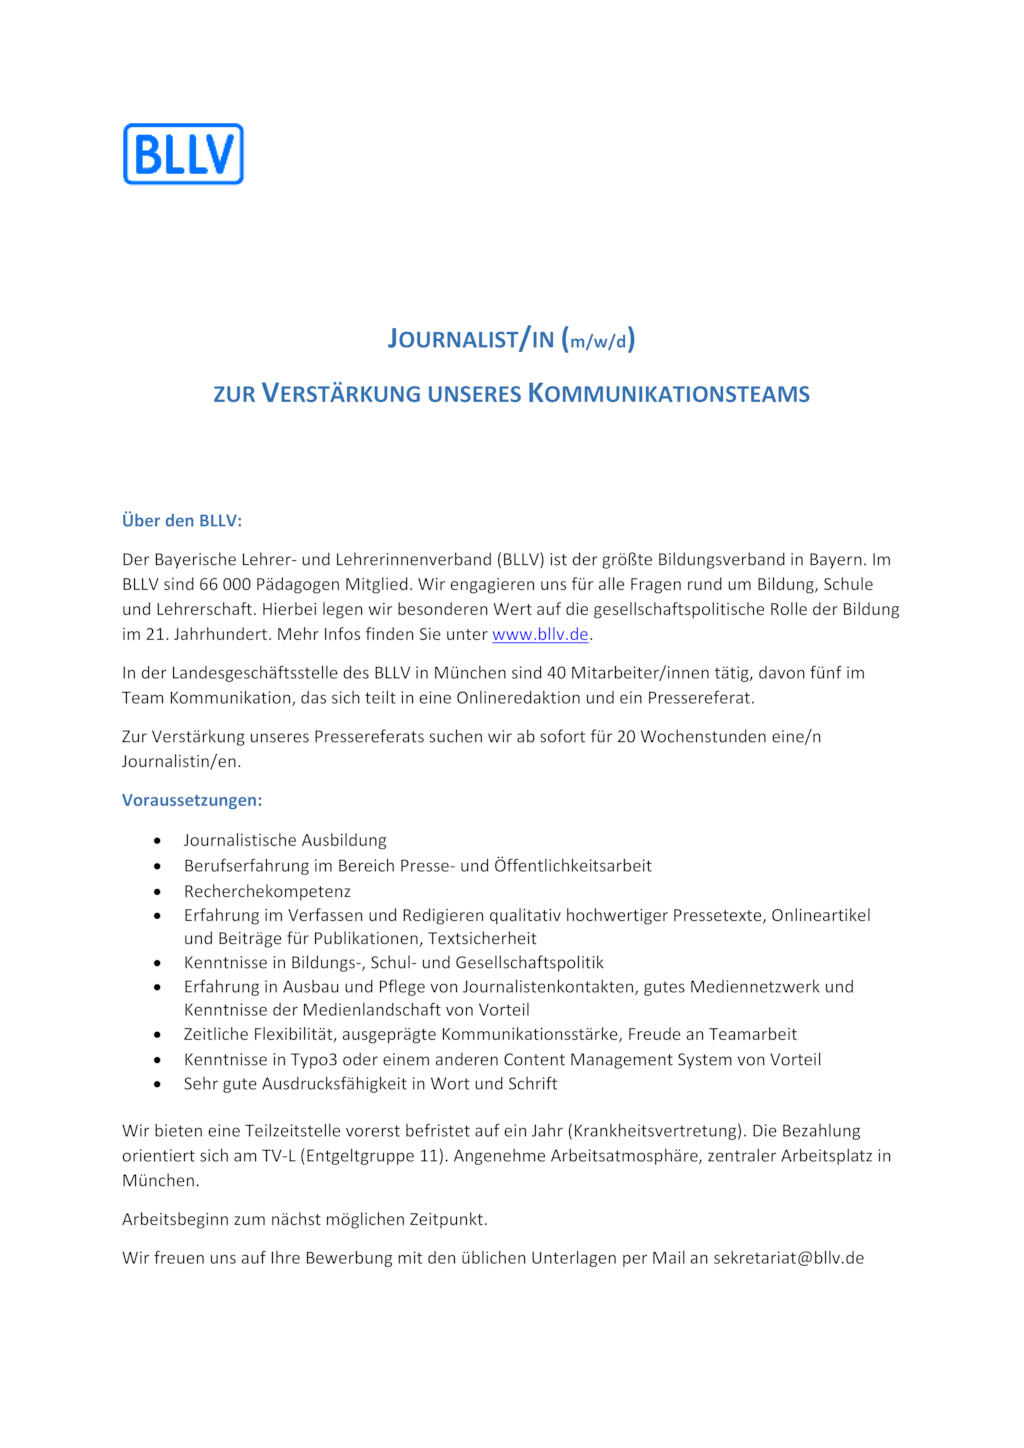 Journalist M/w/d - Aktuelle Jobs - Jobs - Newsroom.de in Stellenangebote Diplom Pädagoge